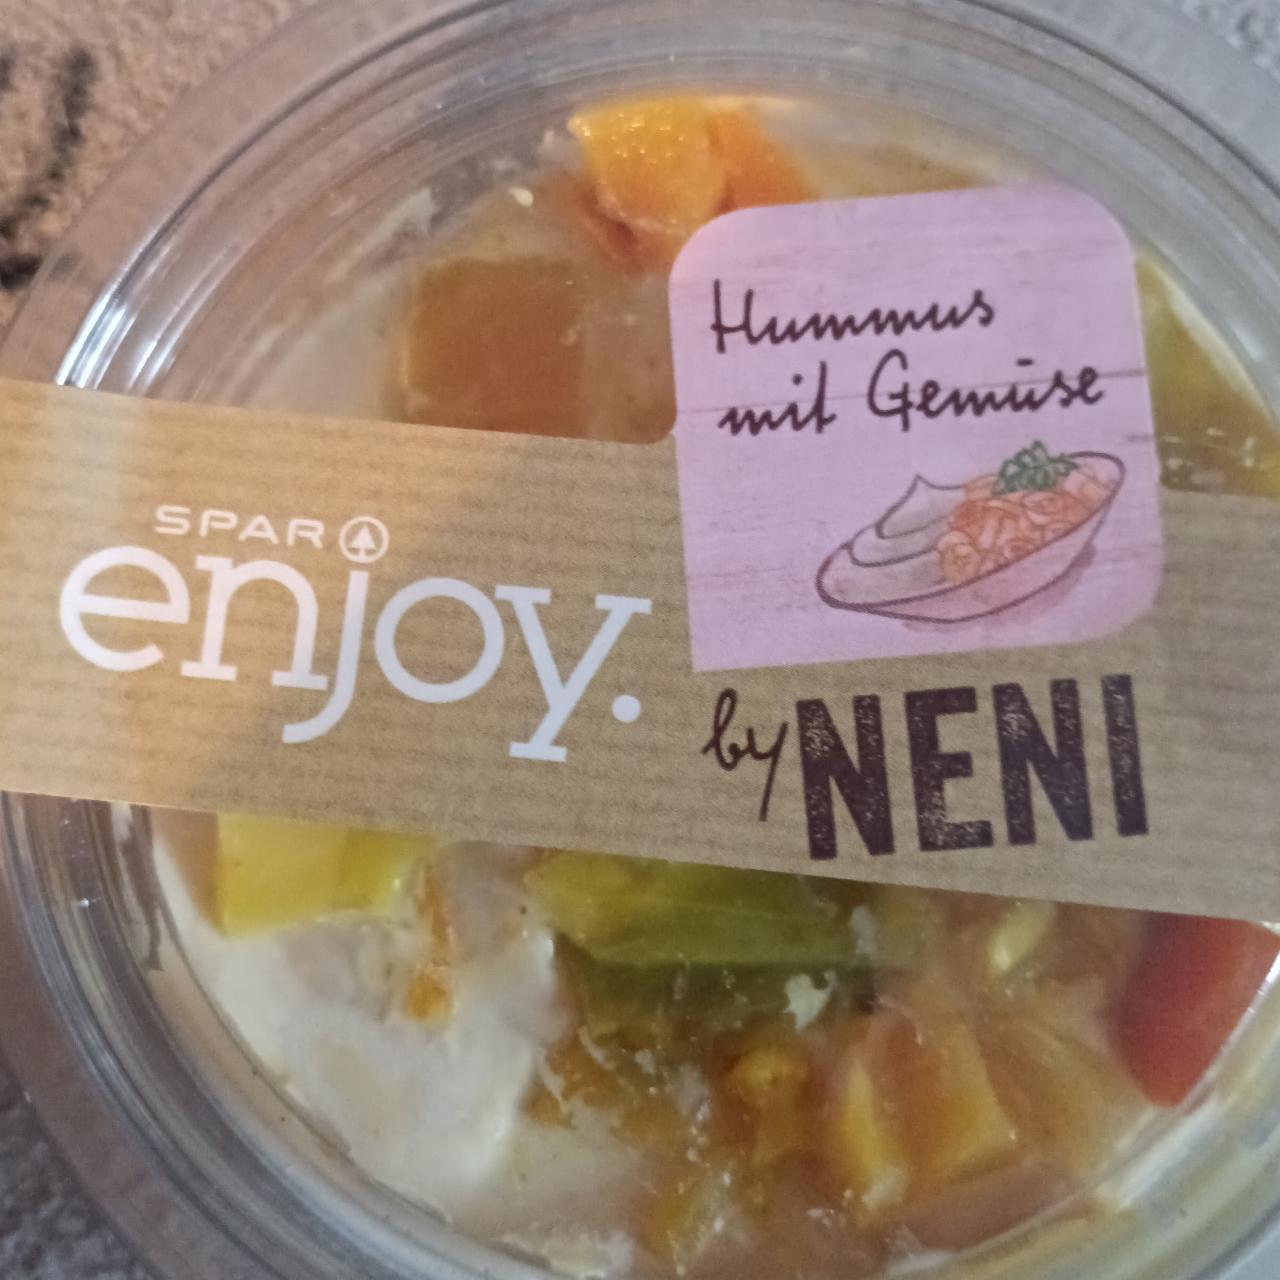 Fotografie - Hummus mit Gemüse SPAR enjoy by NENI